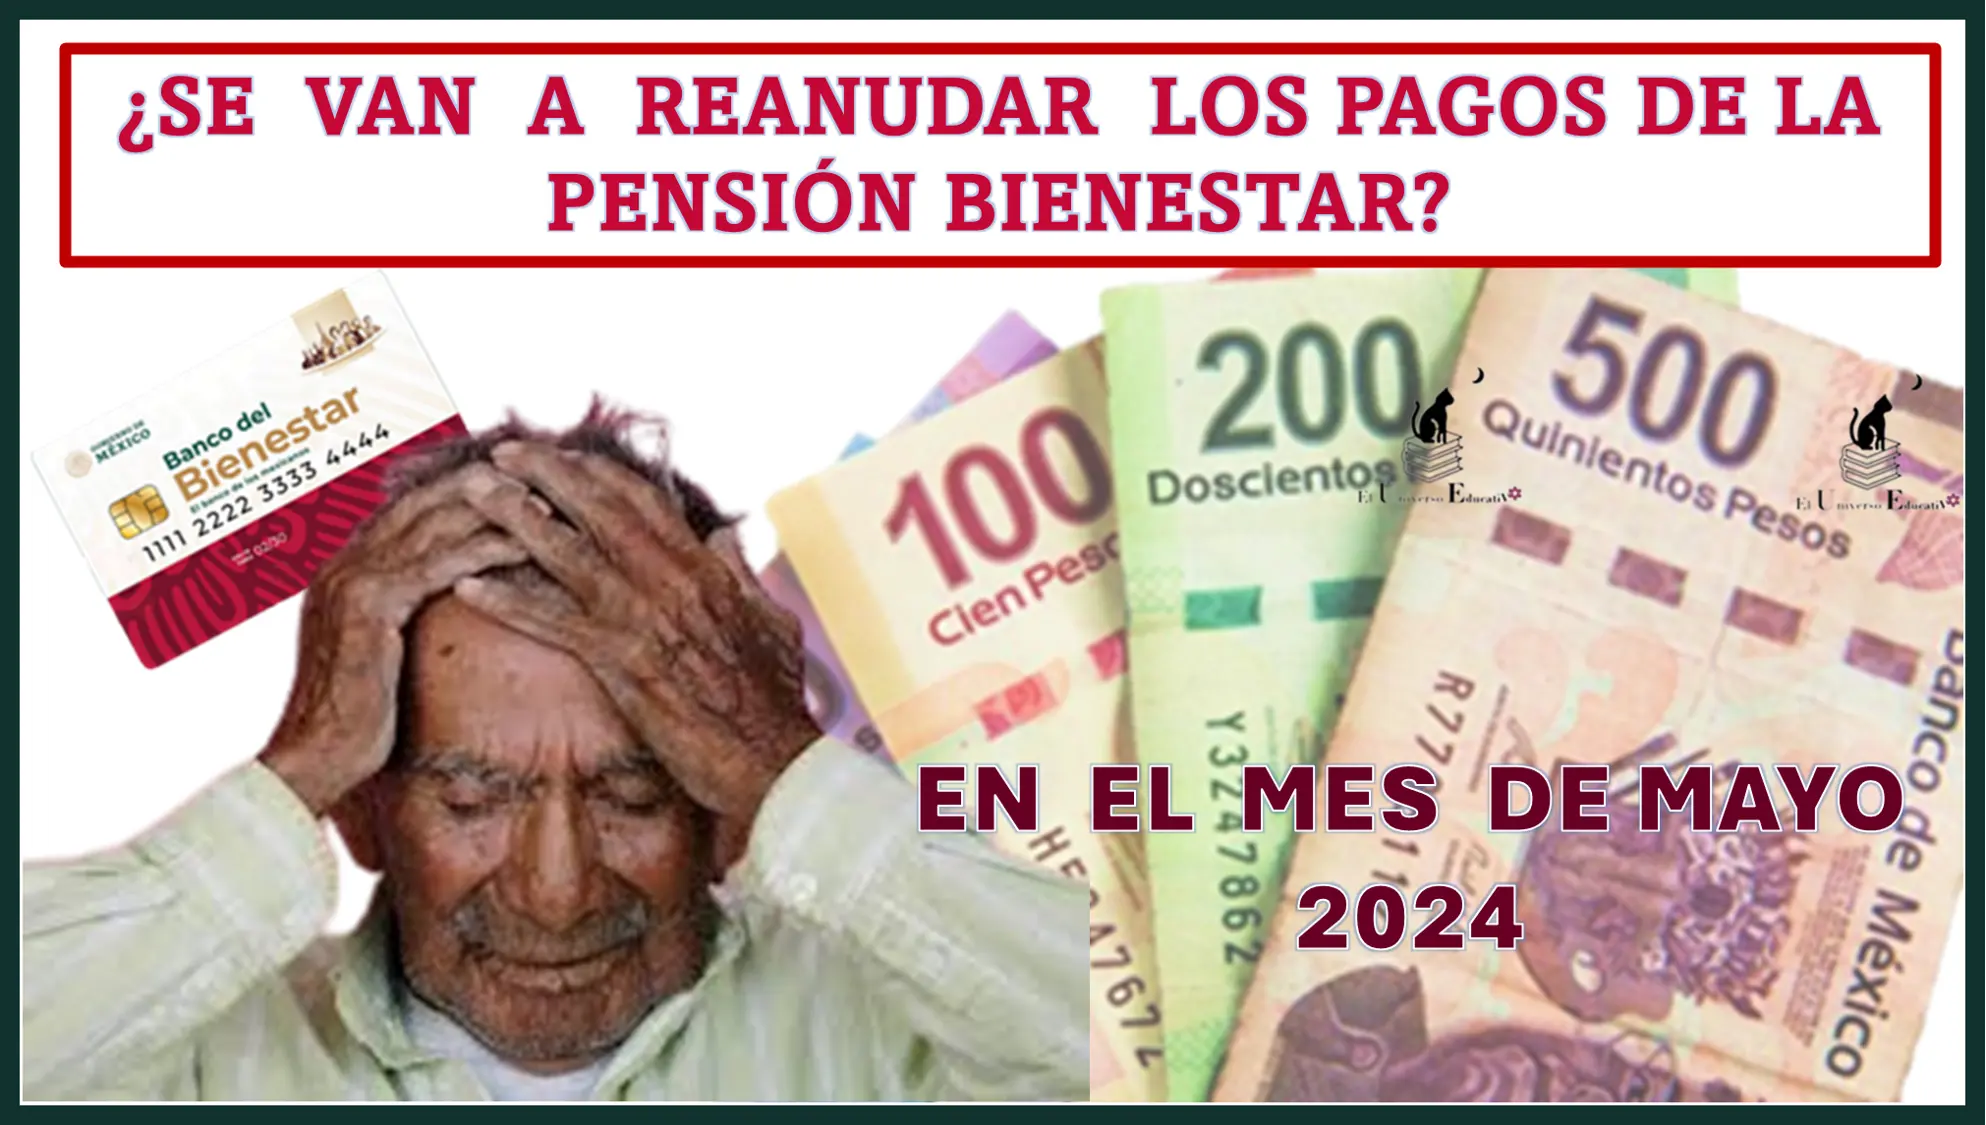 ¿Se van a reanudar los pagos de la Pensión Bienestar en el mes de mayo 2024?